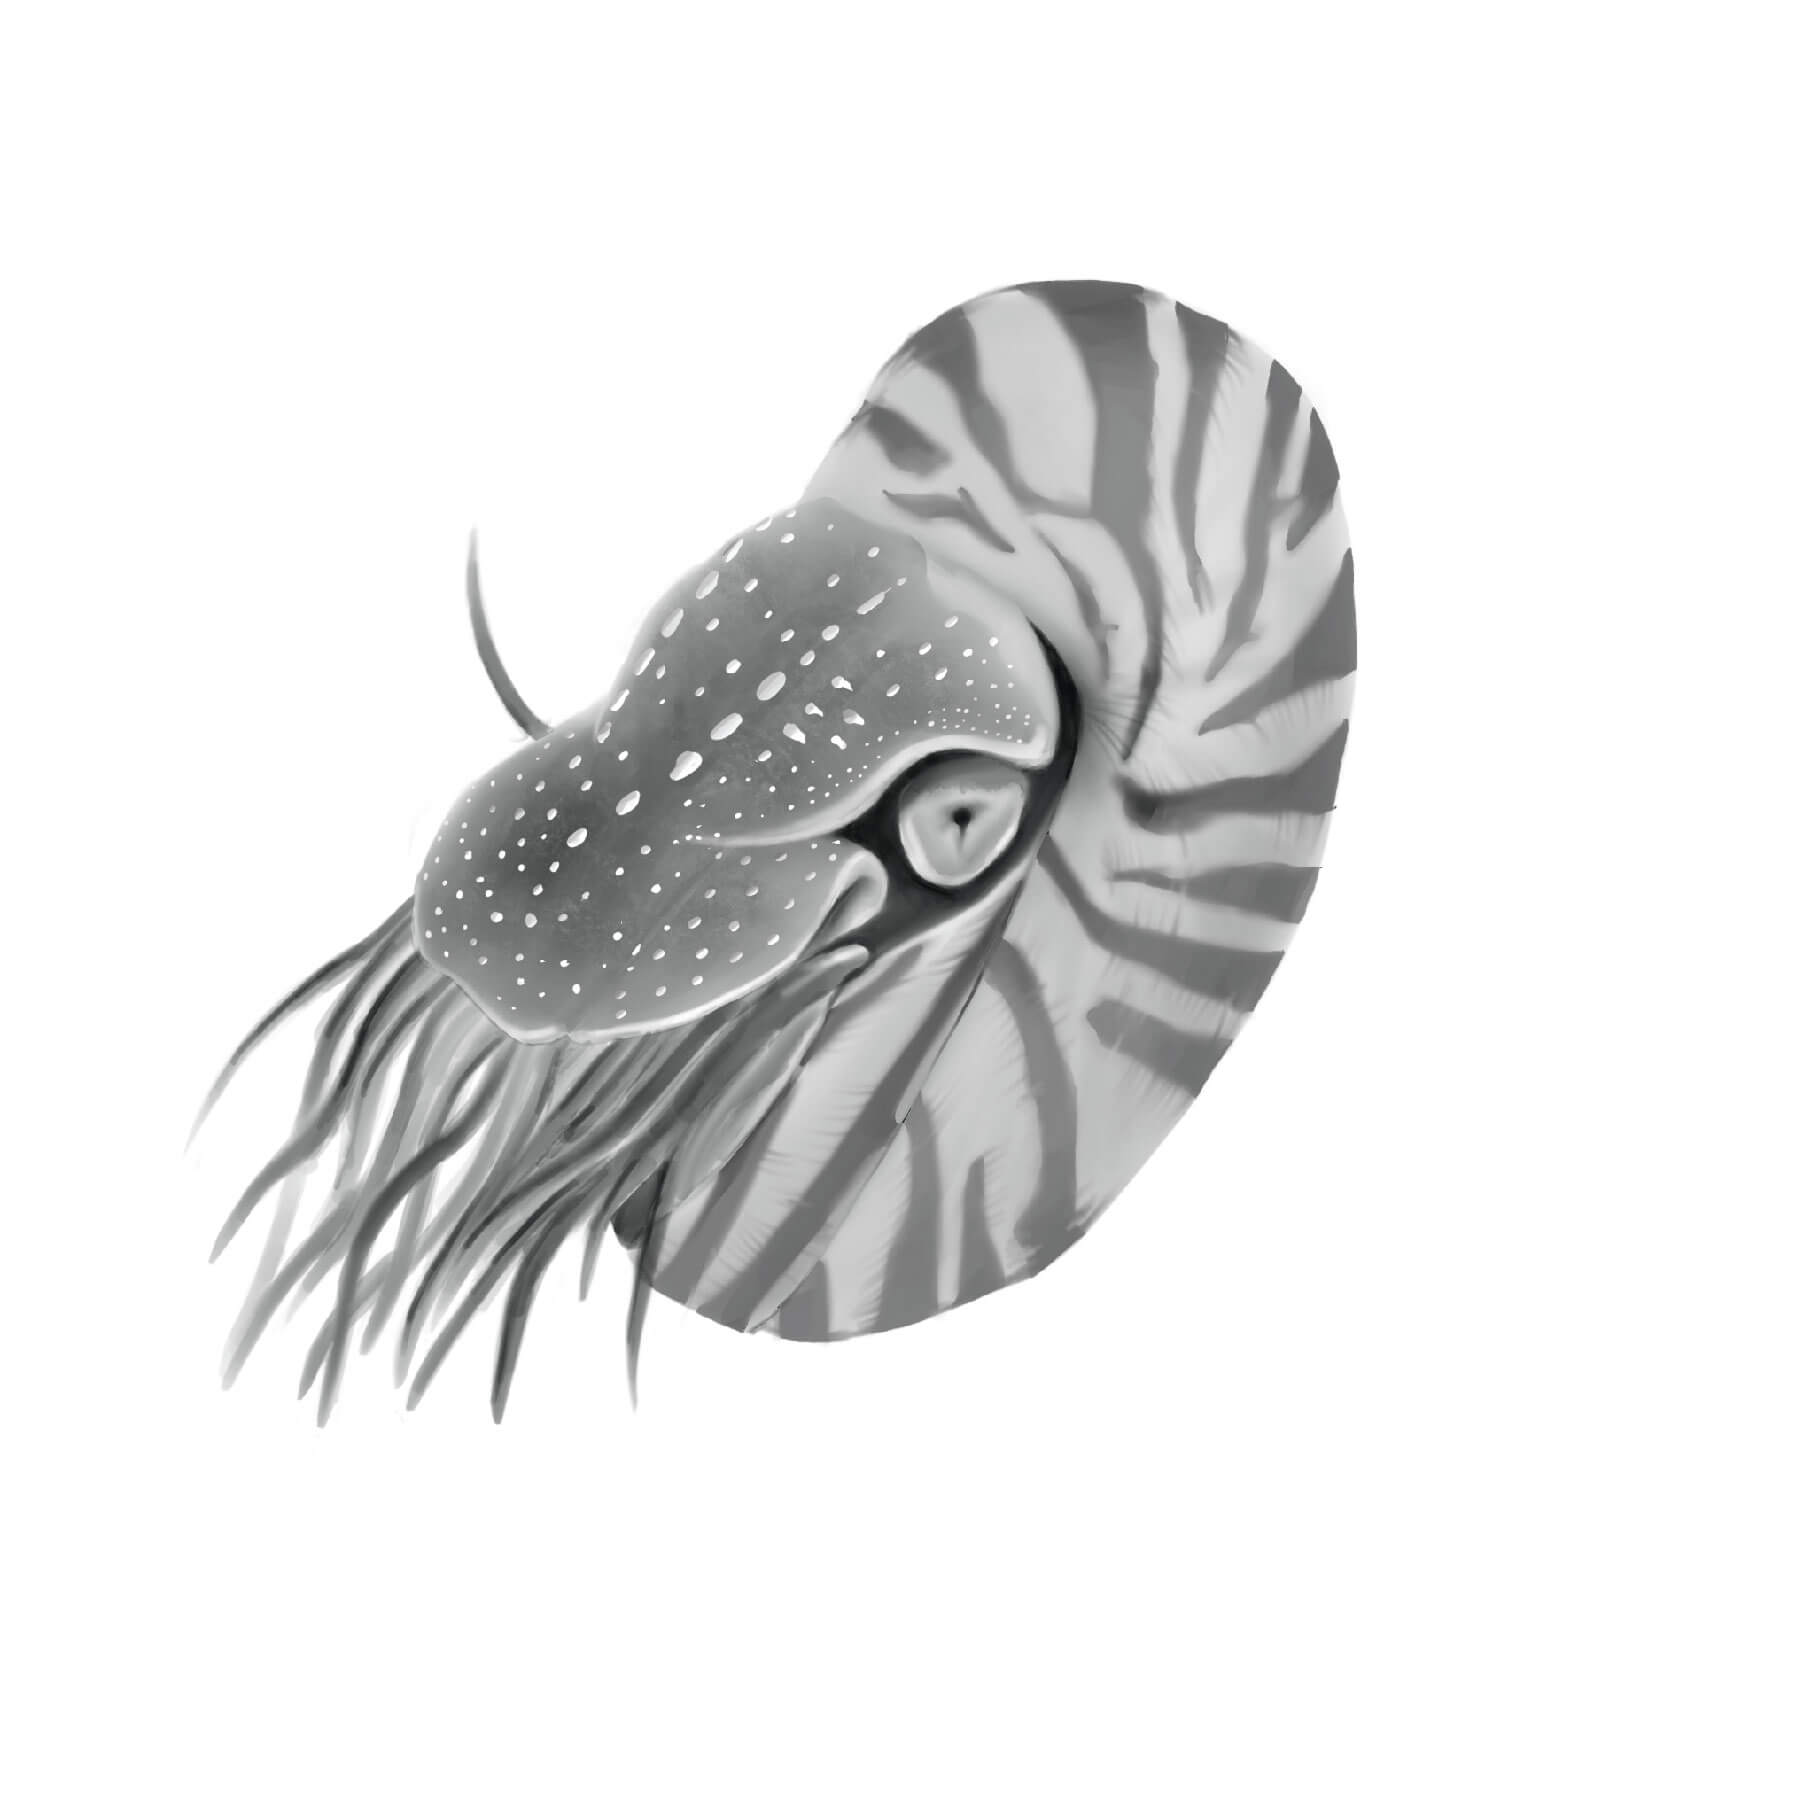 2D Drawing of Nautilus